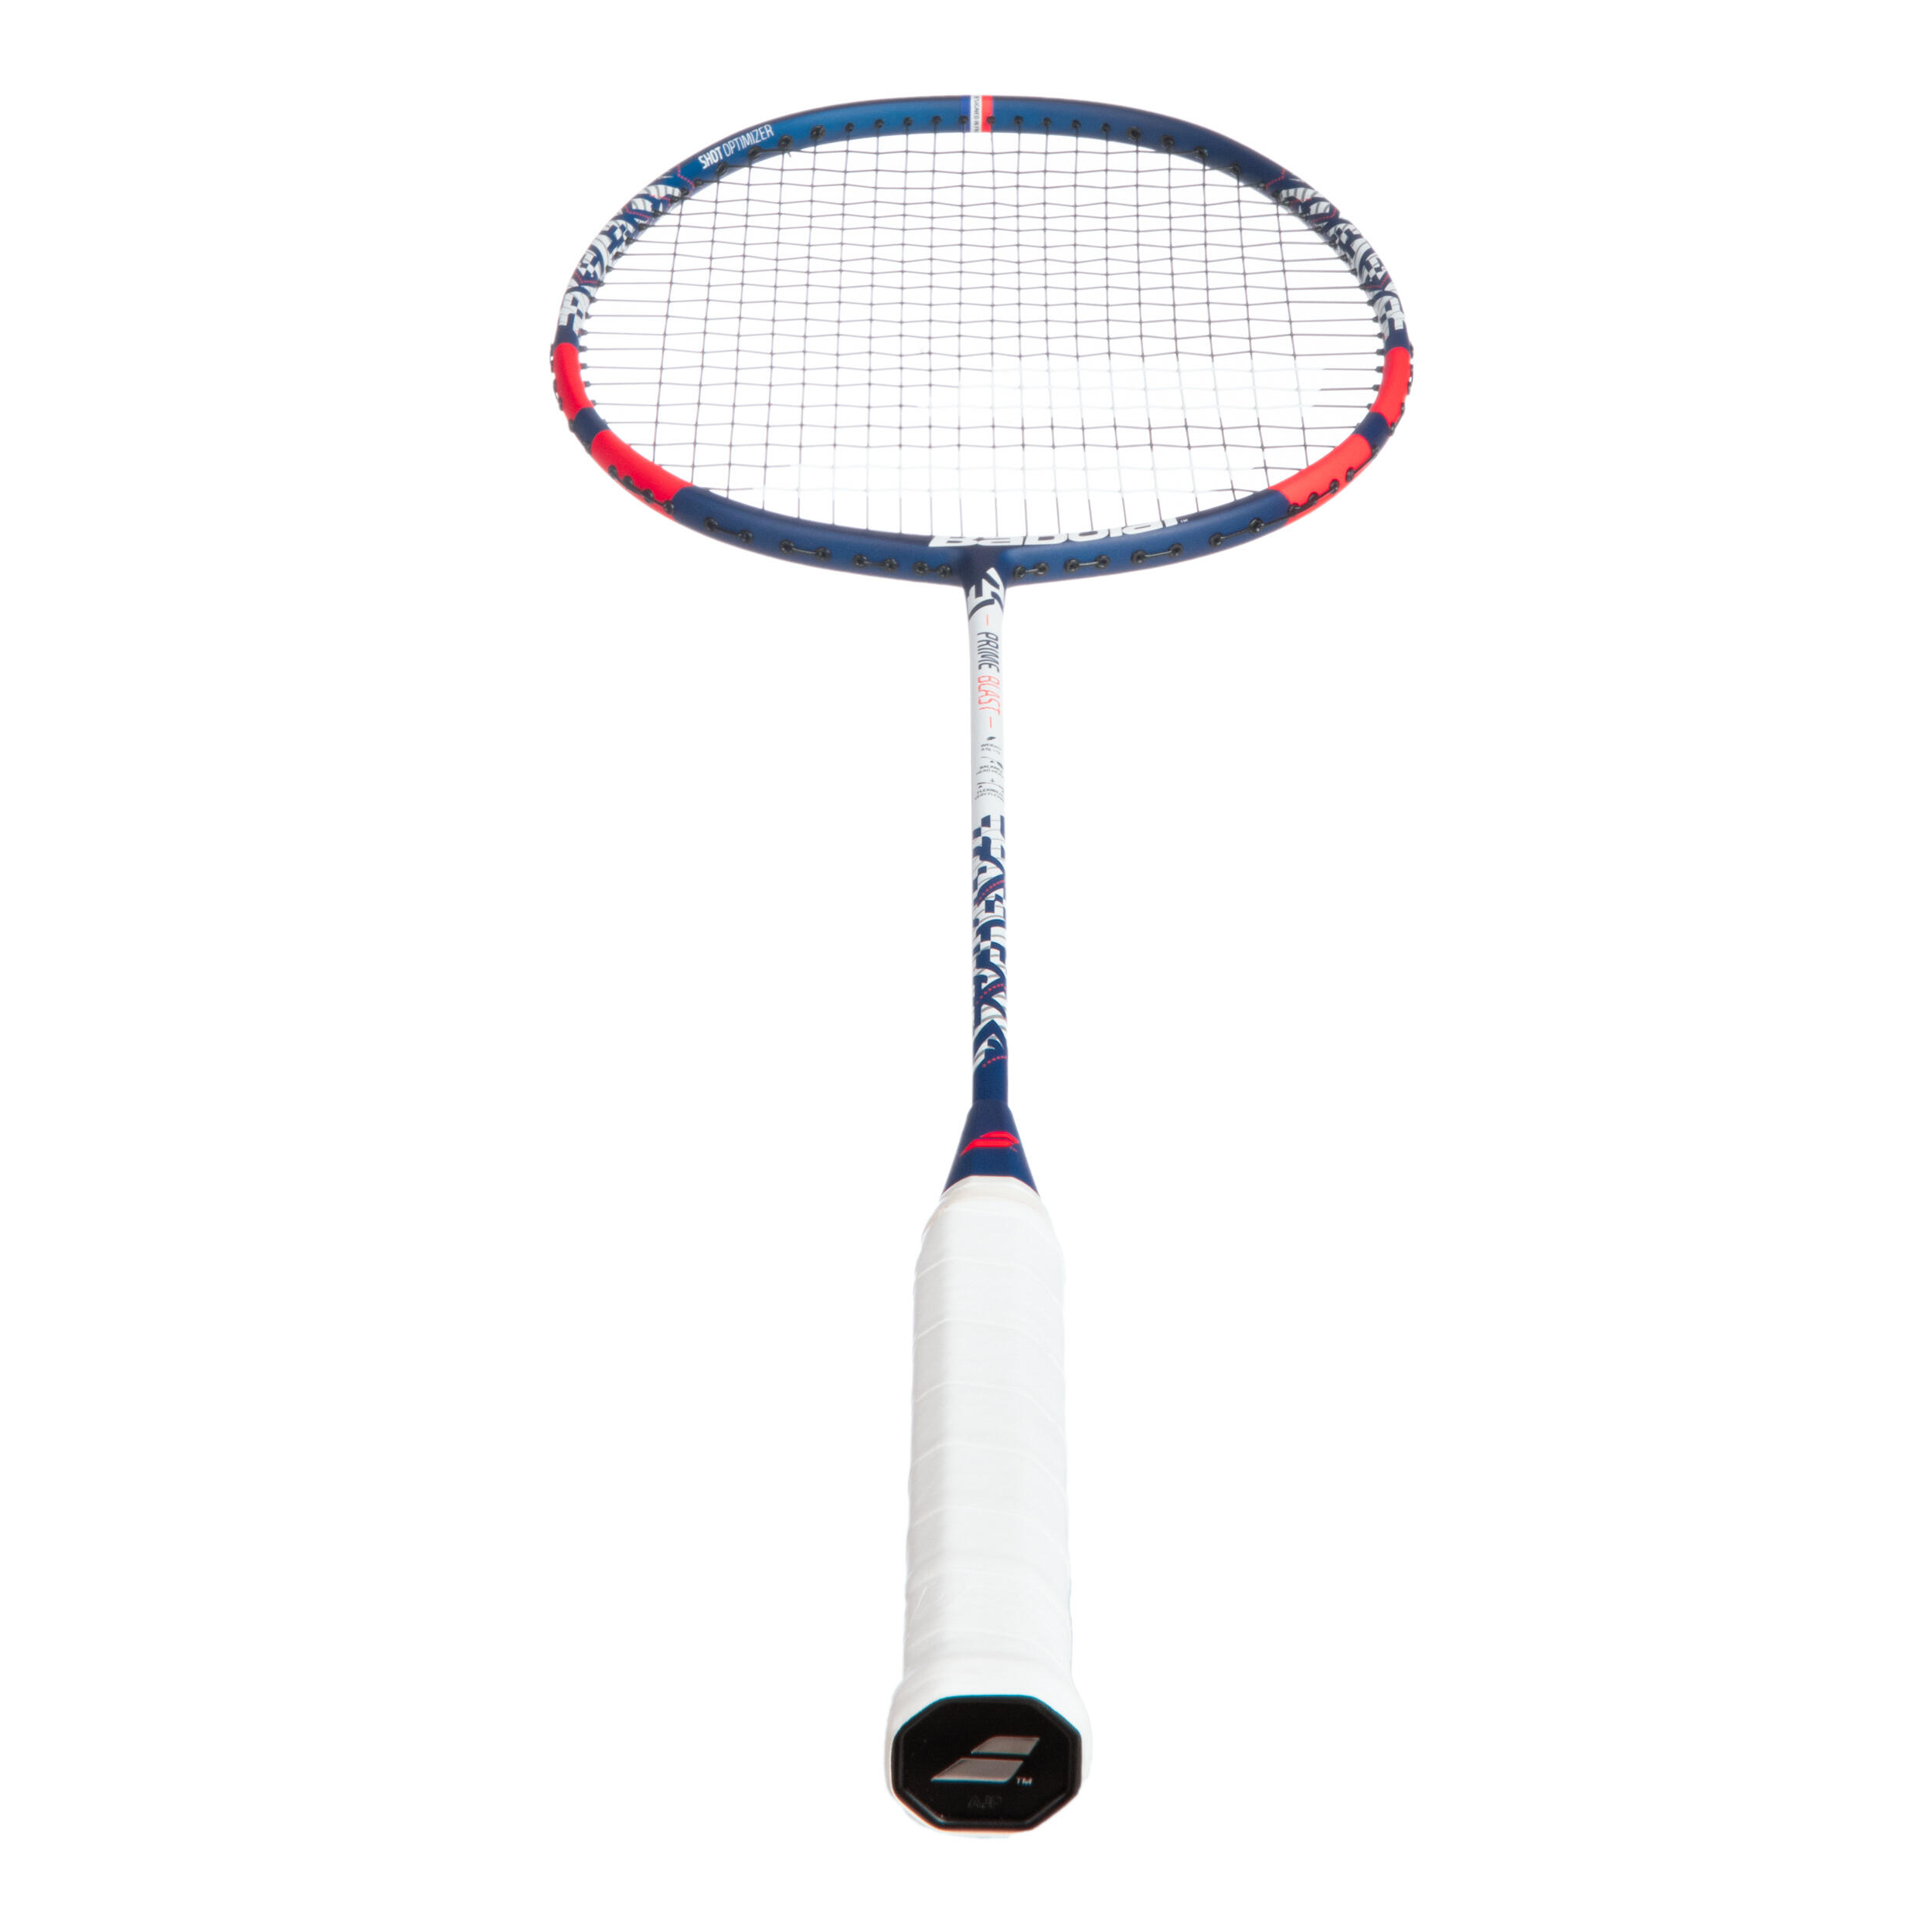 6 Raquette de badminton Babolat Prime power Neuf Valeur 40€ 